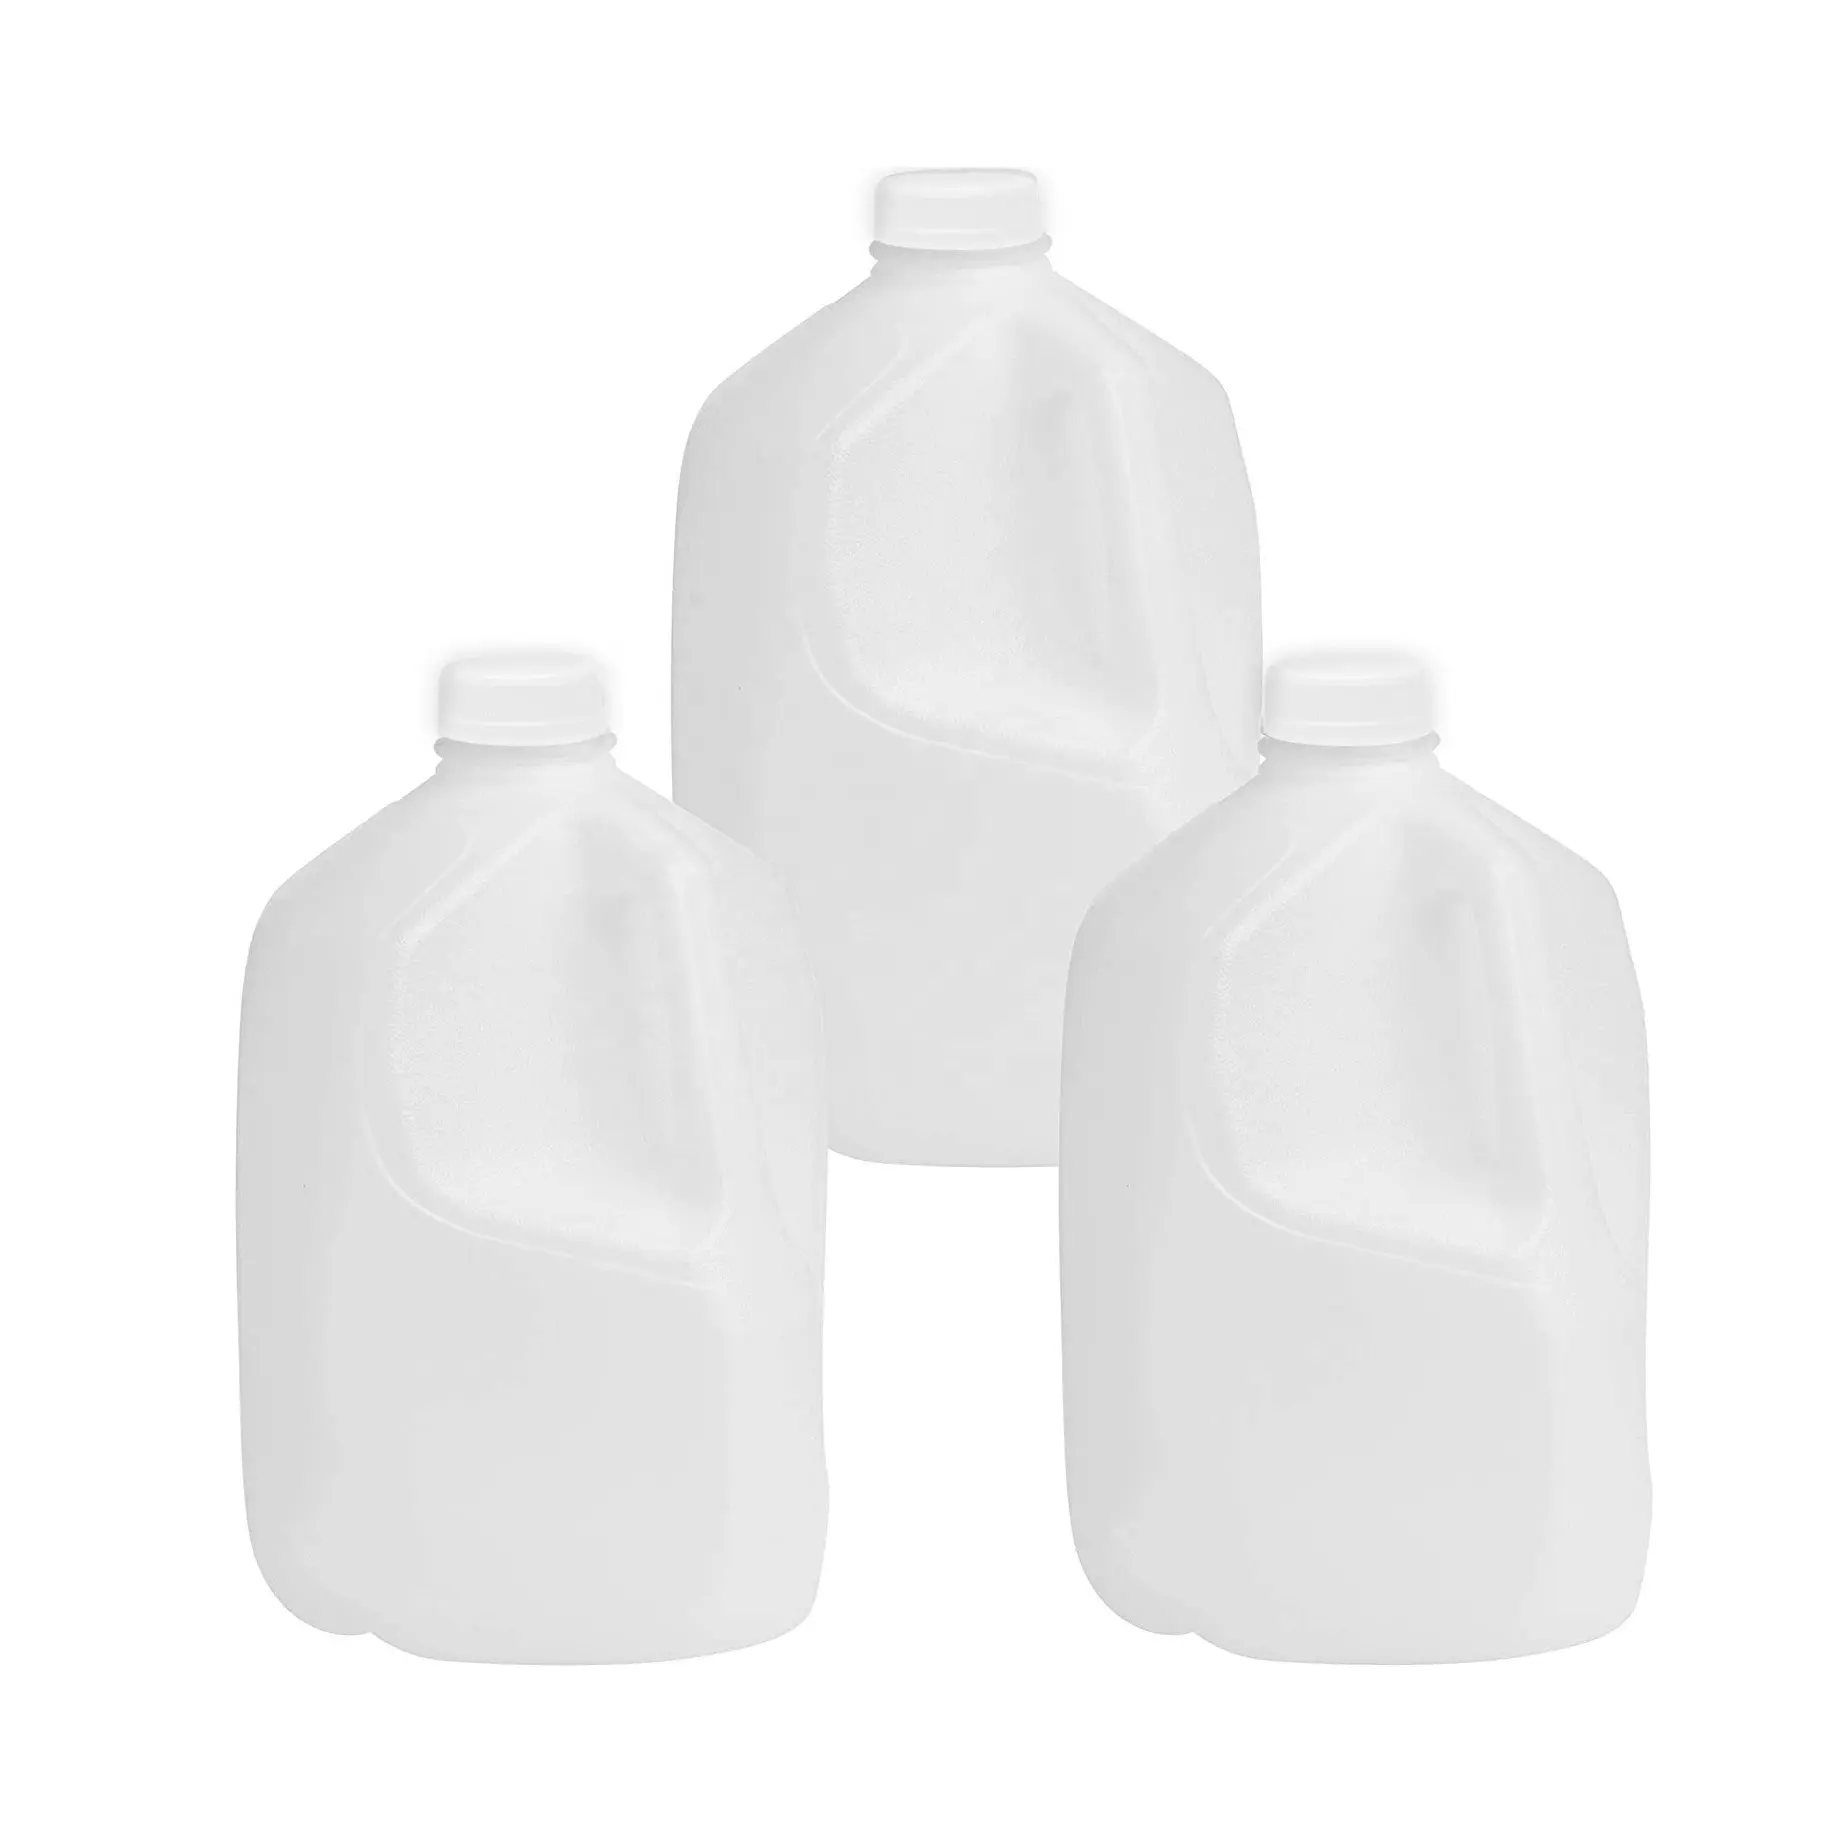 Bình Xăng Rỗng Chắc Chắn Bình Nhựa Đựng Nước Sữa Dầu Ăn Hình Vuông Bình Đựng Sữa 1 Gallon Bình Nhựa Có Tay Cầm